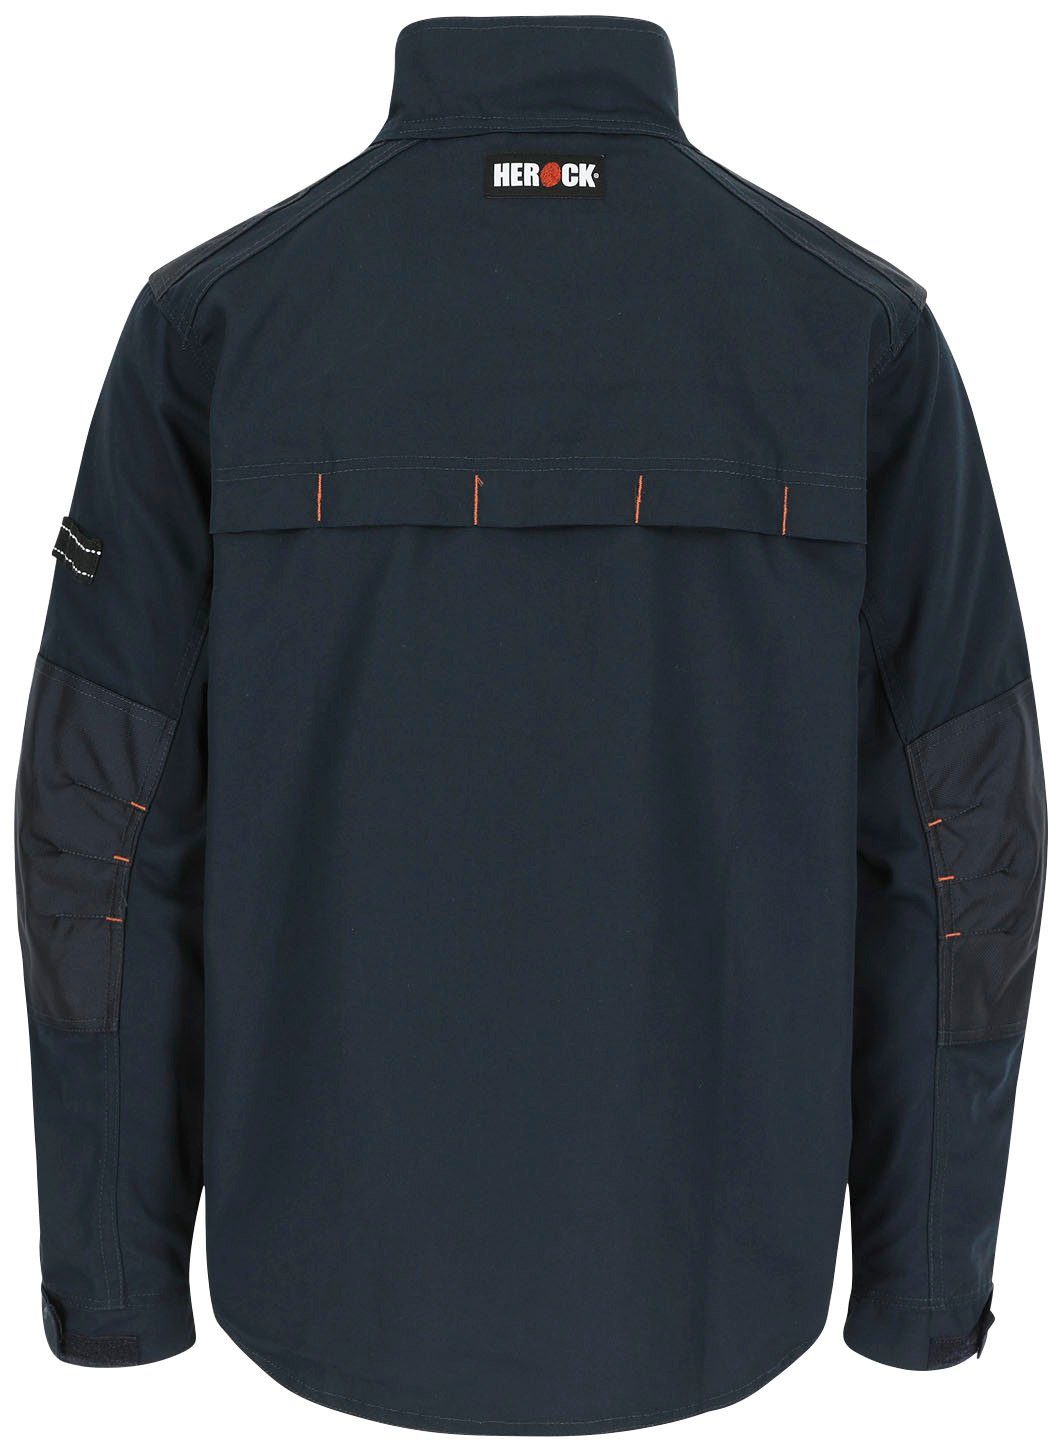 Herock 7 robust marine - Jacke Wasserabweisend - verstellbare Anzar - Bündchen Arbeitsjacke Taschen